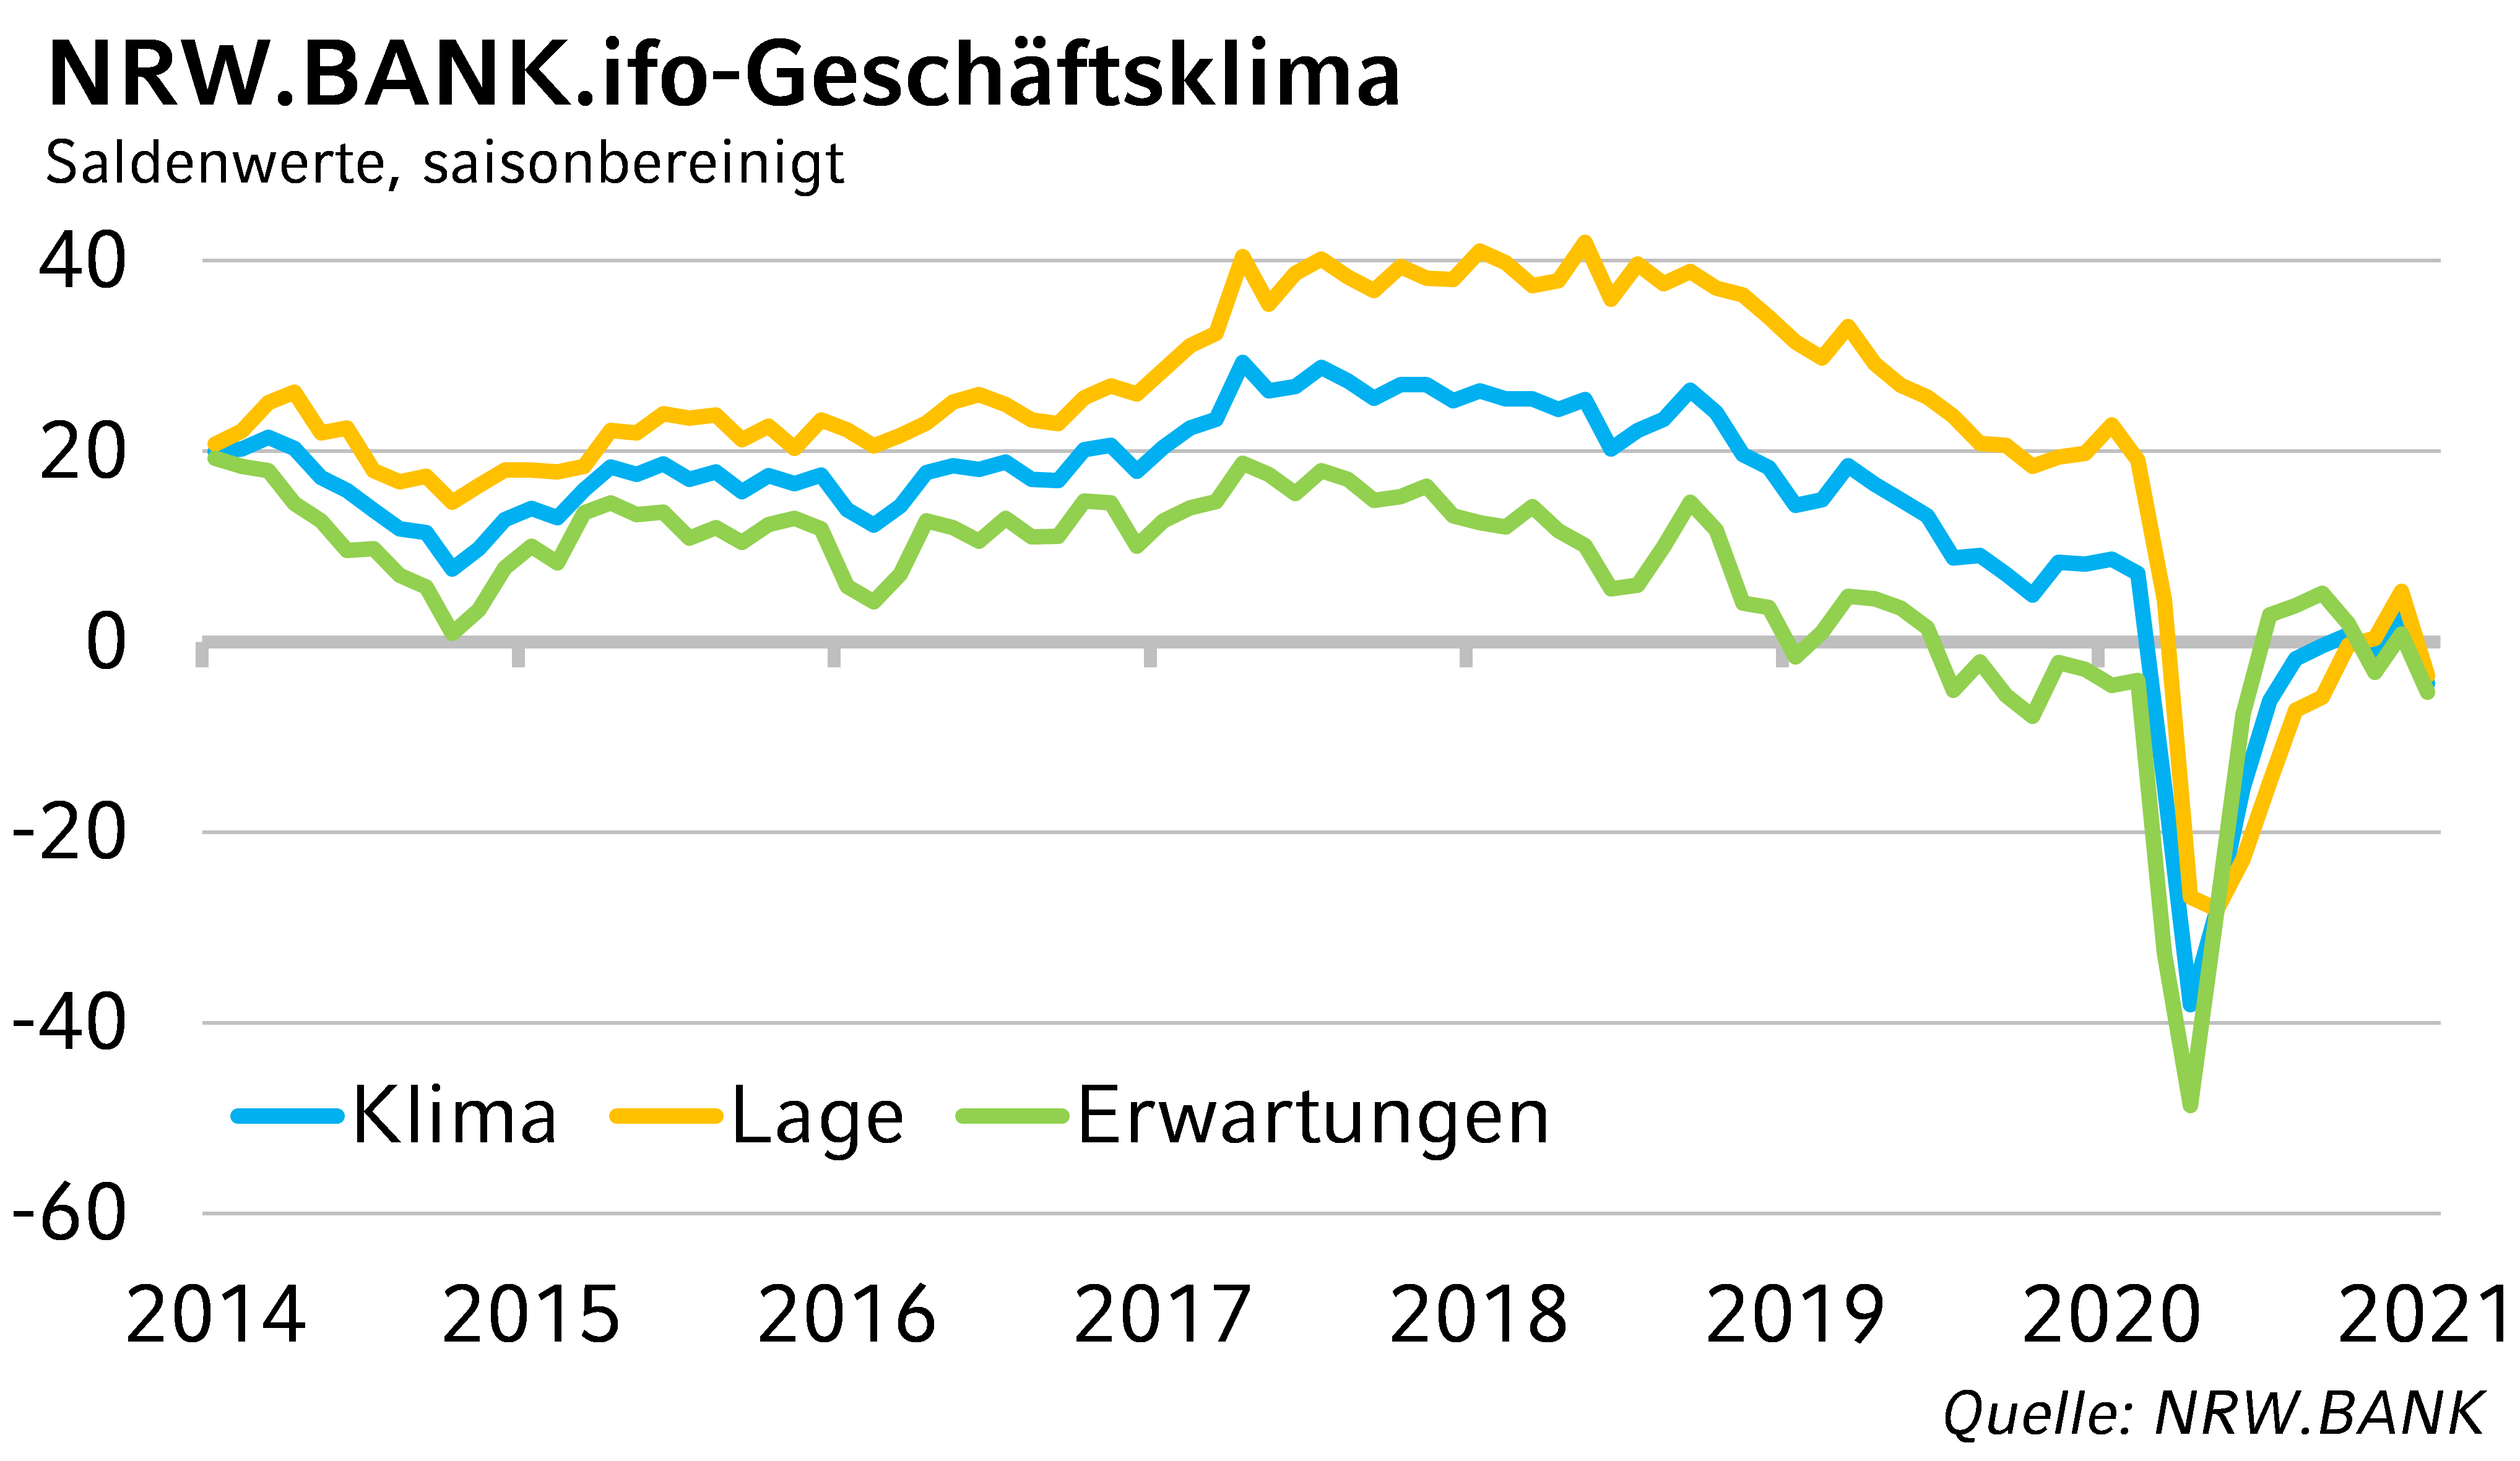 NRW.BANK.ifo-Geschäftsklima Januar 2021: Aufschwung der NRW-Wirtschaft unterbrochen